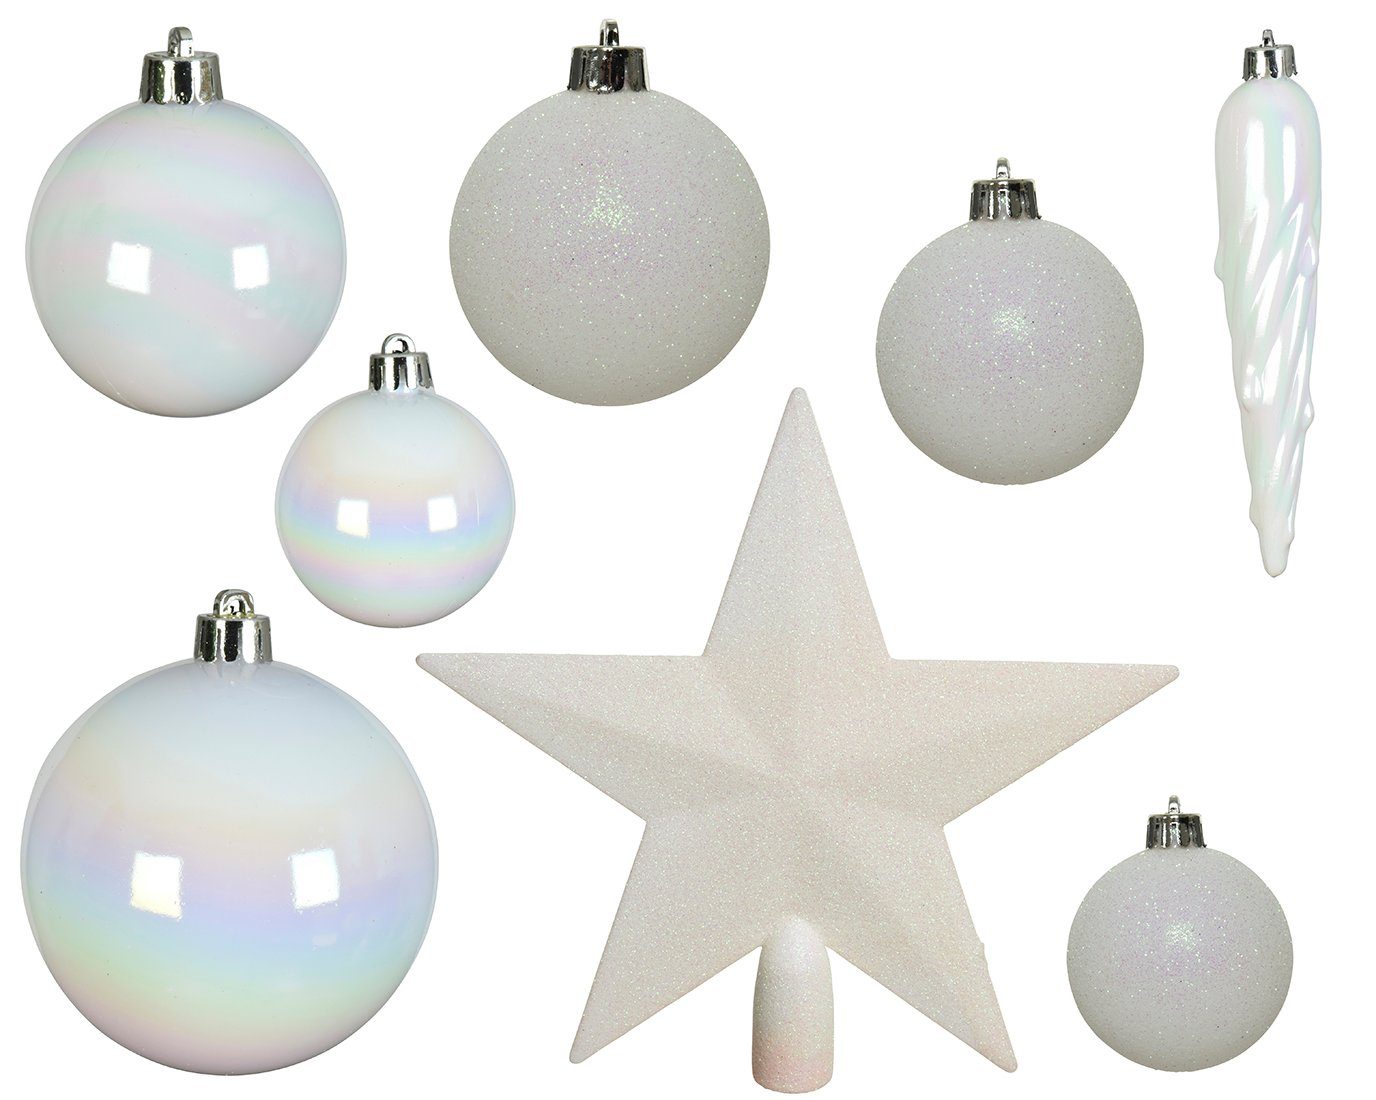 Decoris season decorations Weihnachtsbaumkugel, Weihnachtskugeln mit Christbaumstern Kunststoff weiß iris, 33er Set